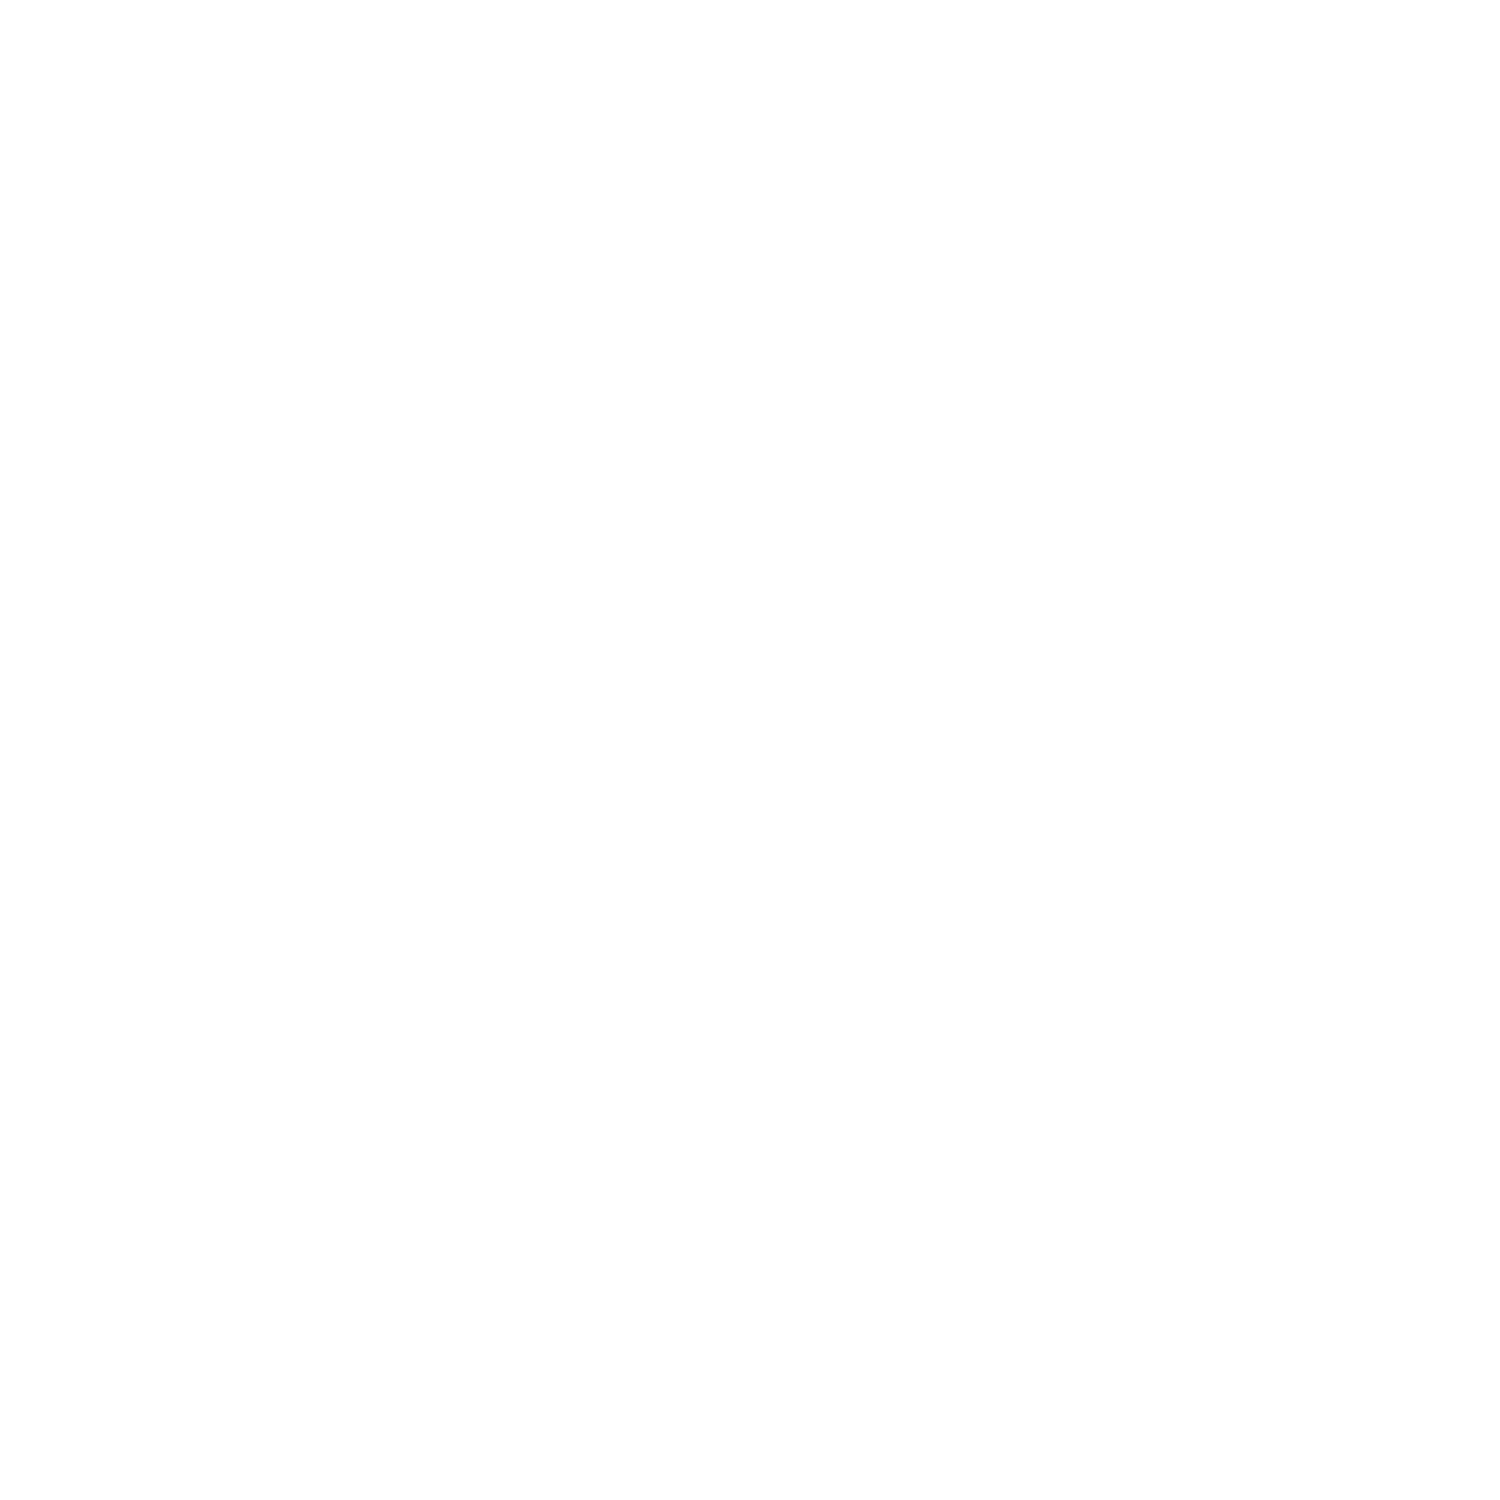 The Natural Wall